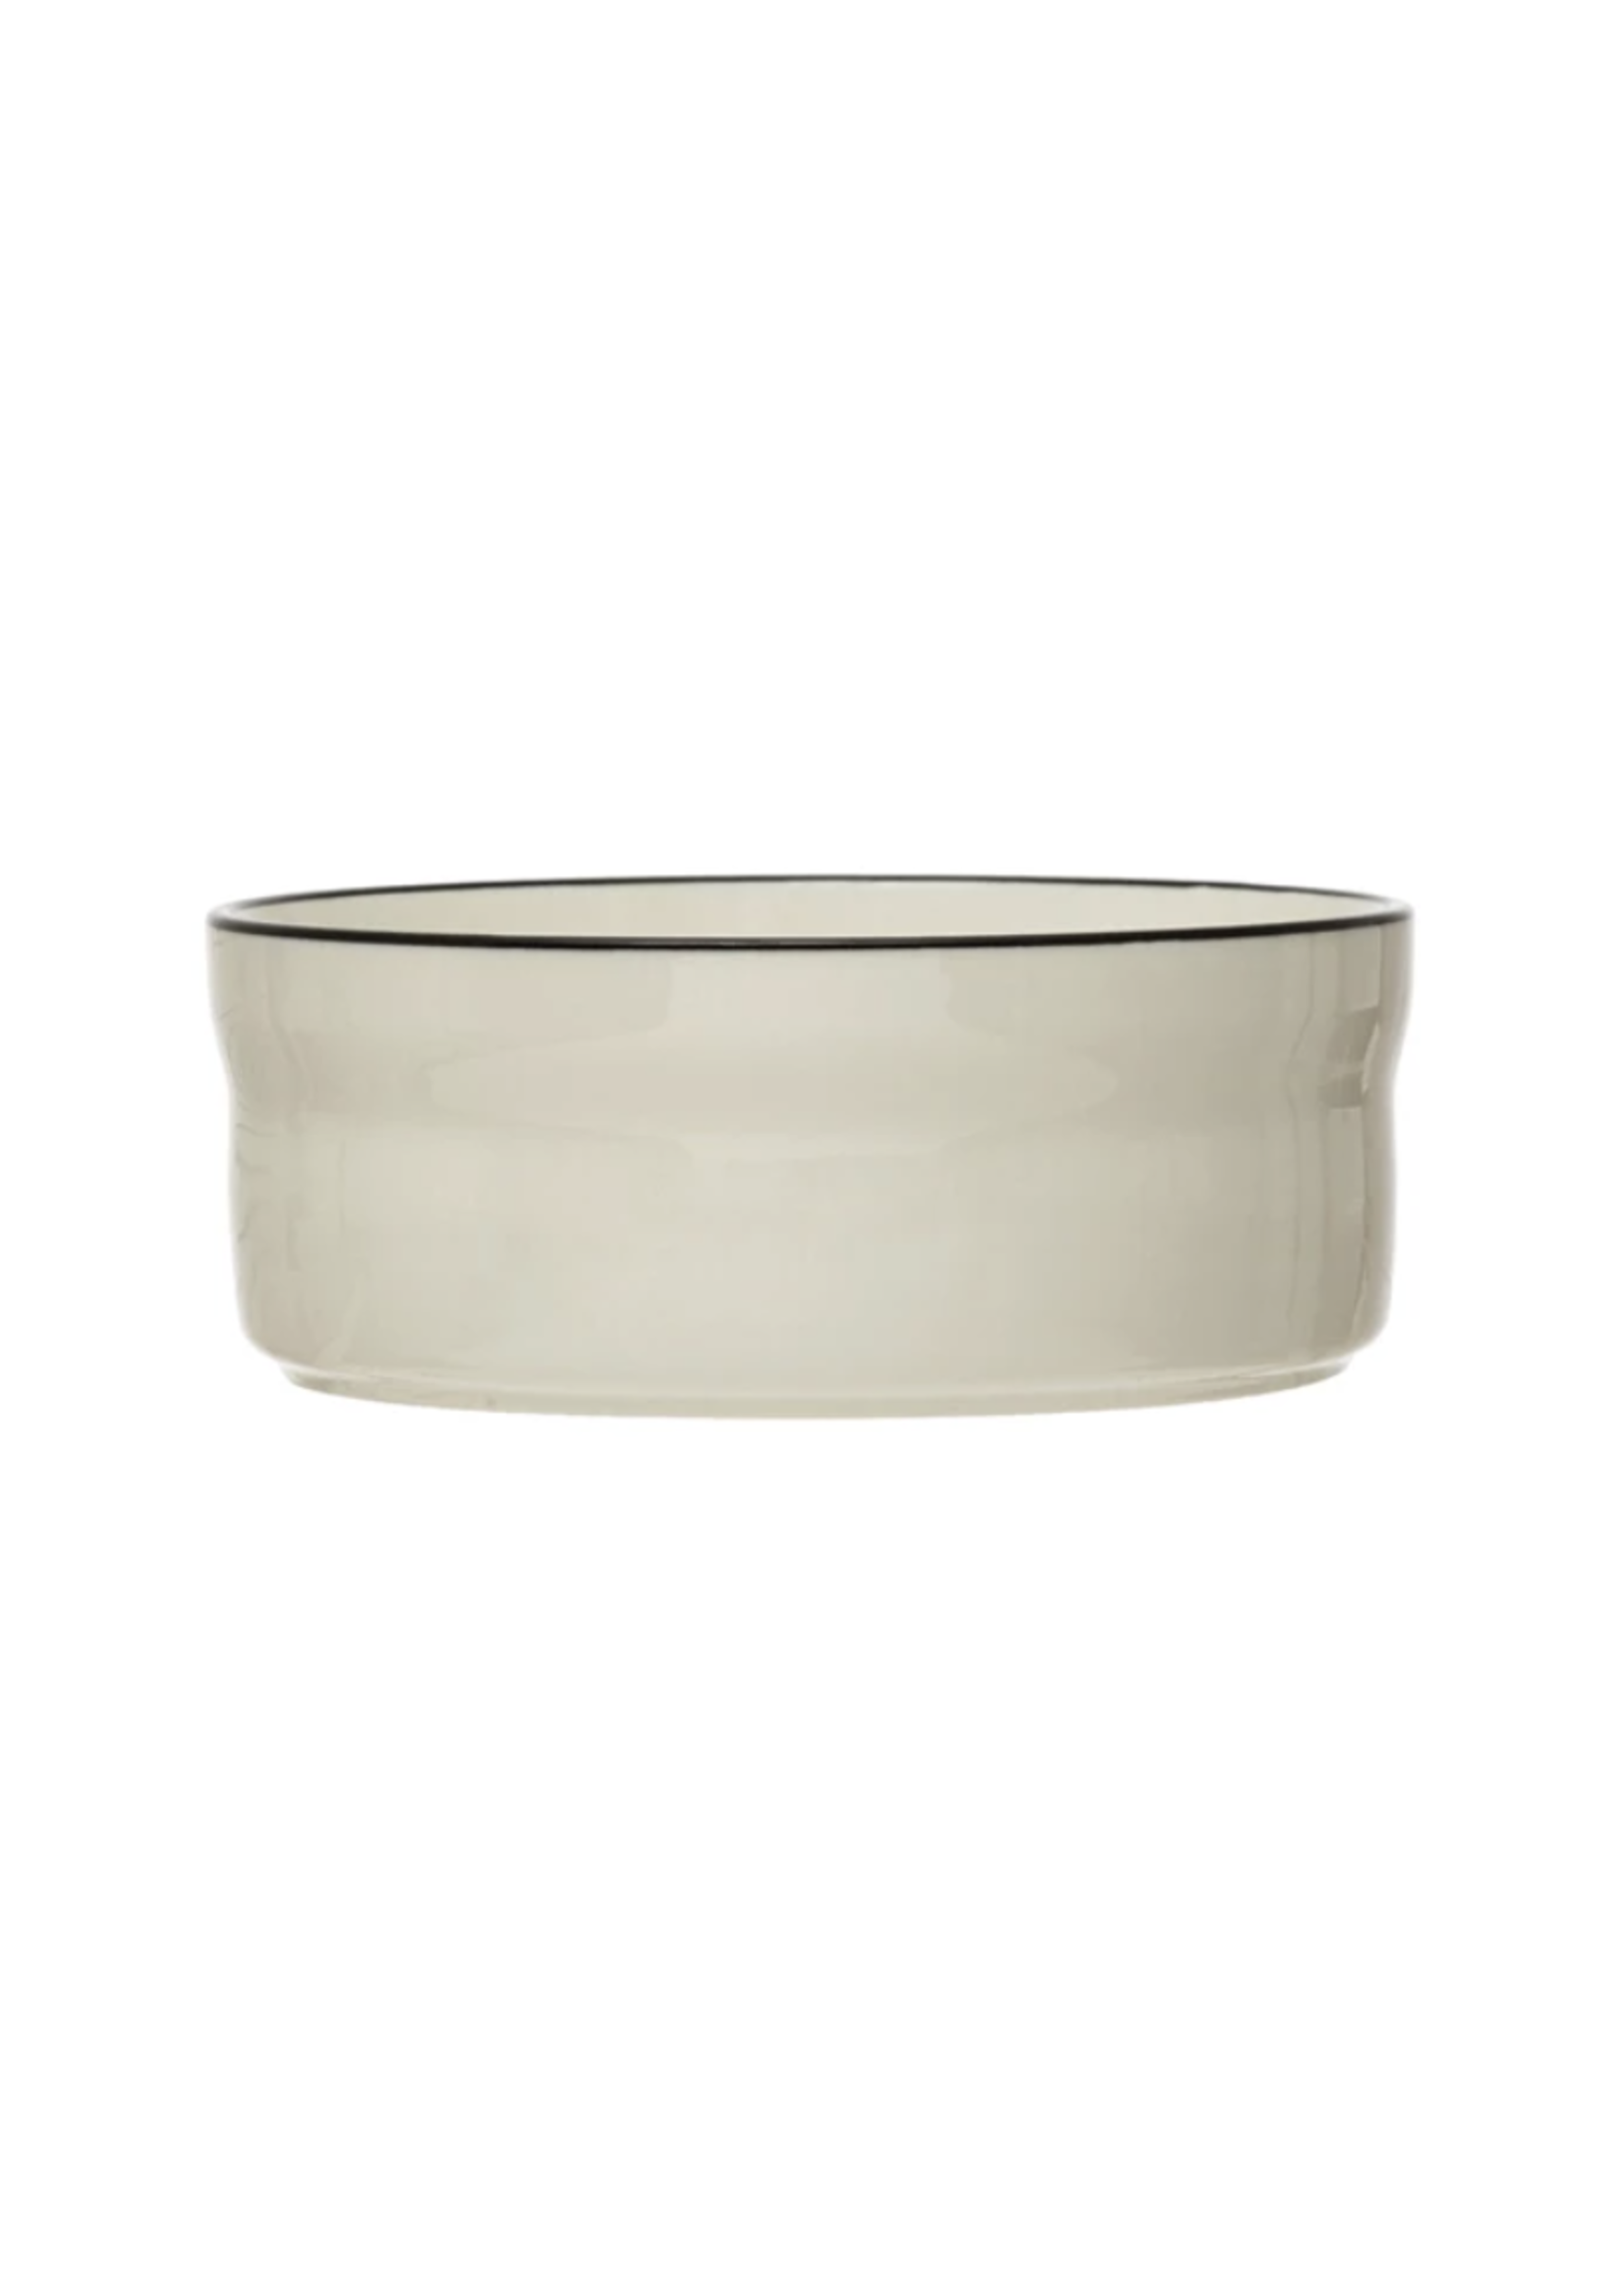 Cup Stoneware Pet Bowl w/ Black Rim, White